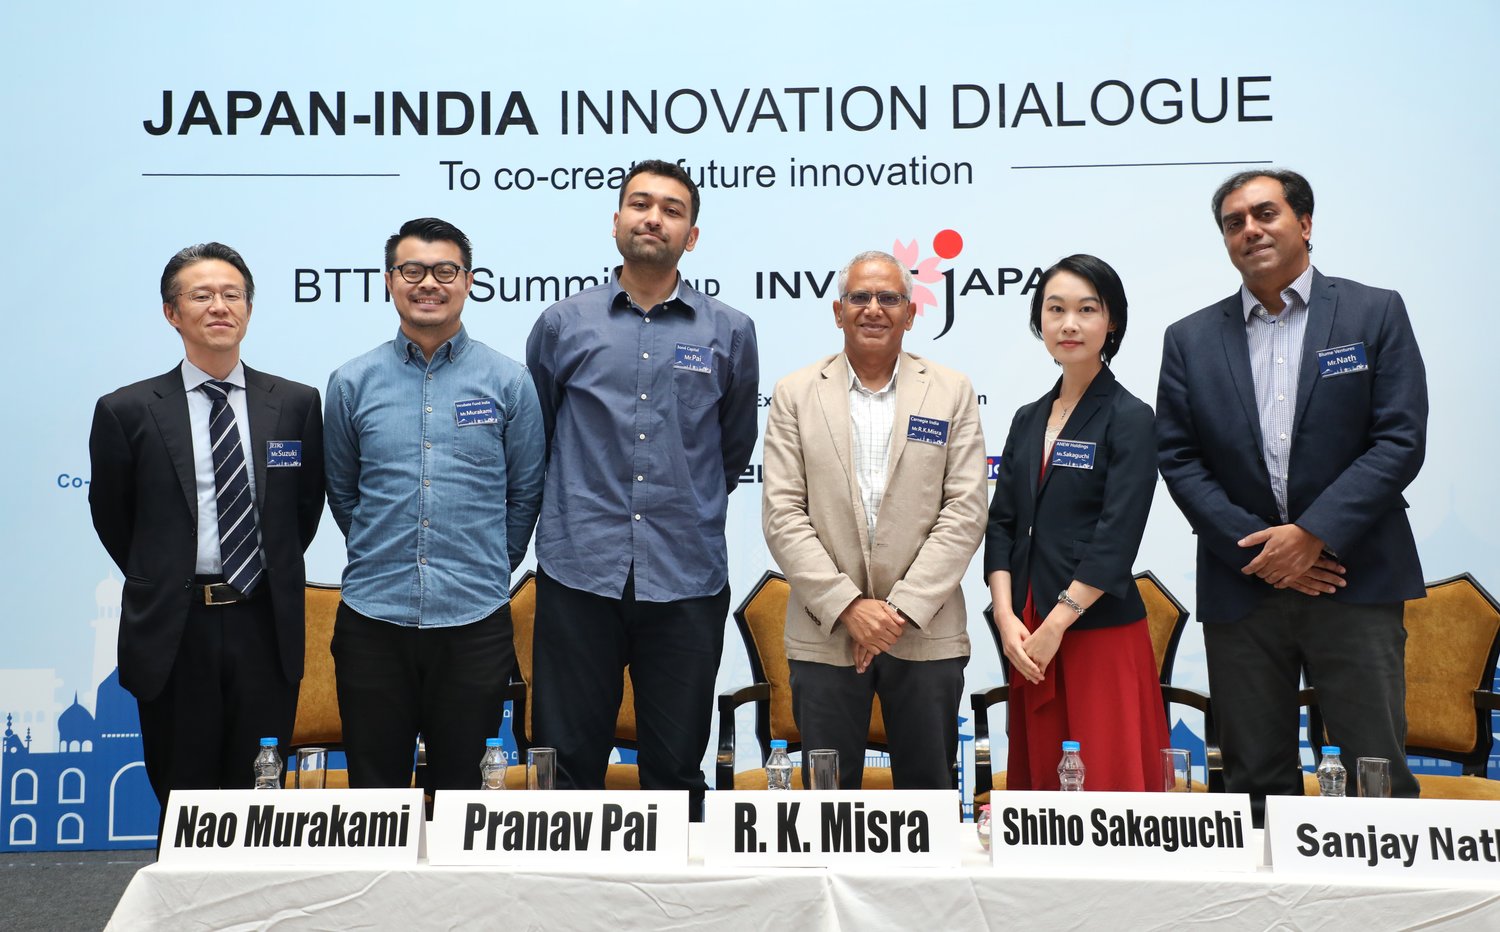 「第4回ベンガルール・東京・テクノロジー・イニシアチブ」を開催 ～「インド・イノベーションミッション」を機に日系企業のイノベーション創出を 技術・投資分野における日印パートナーシップ構築により支援～